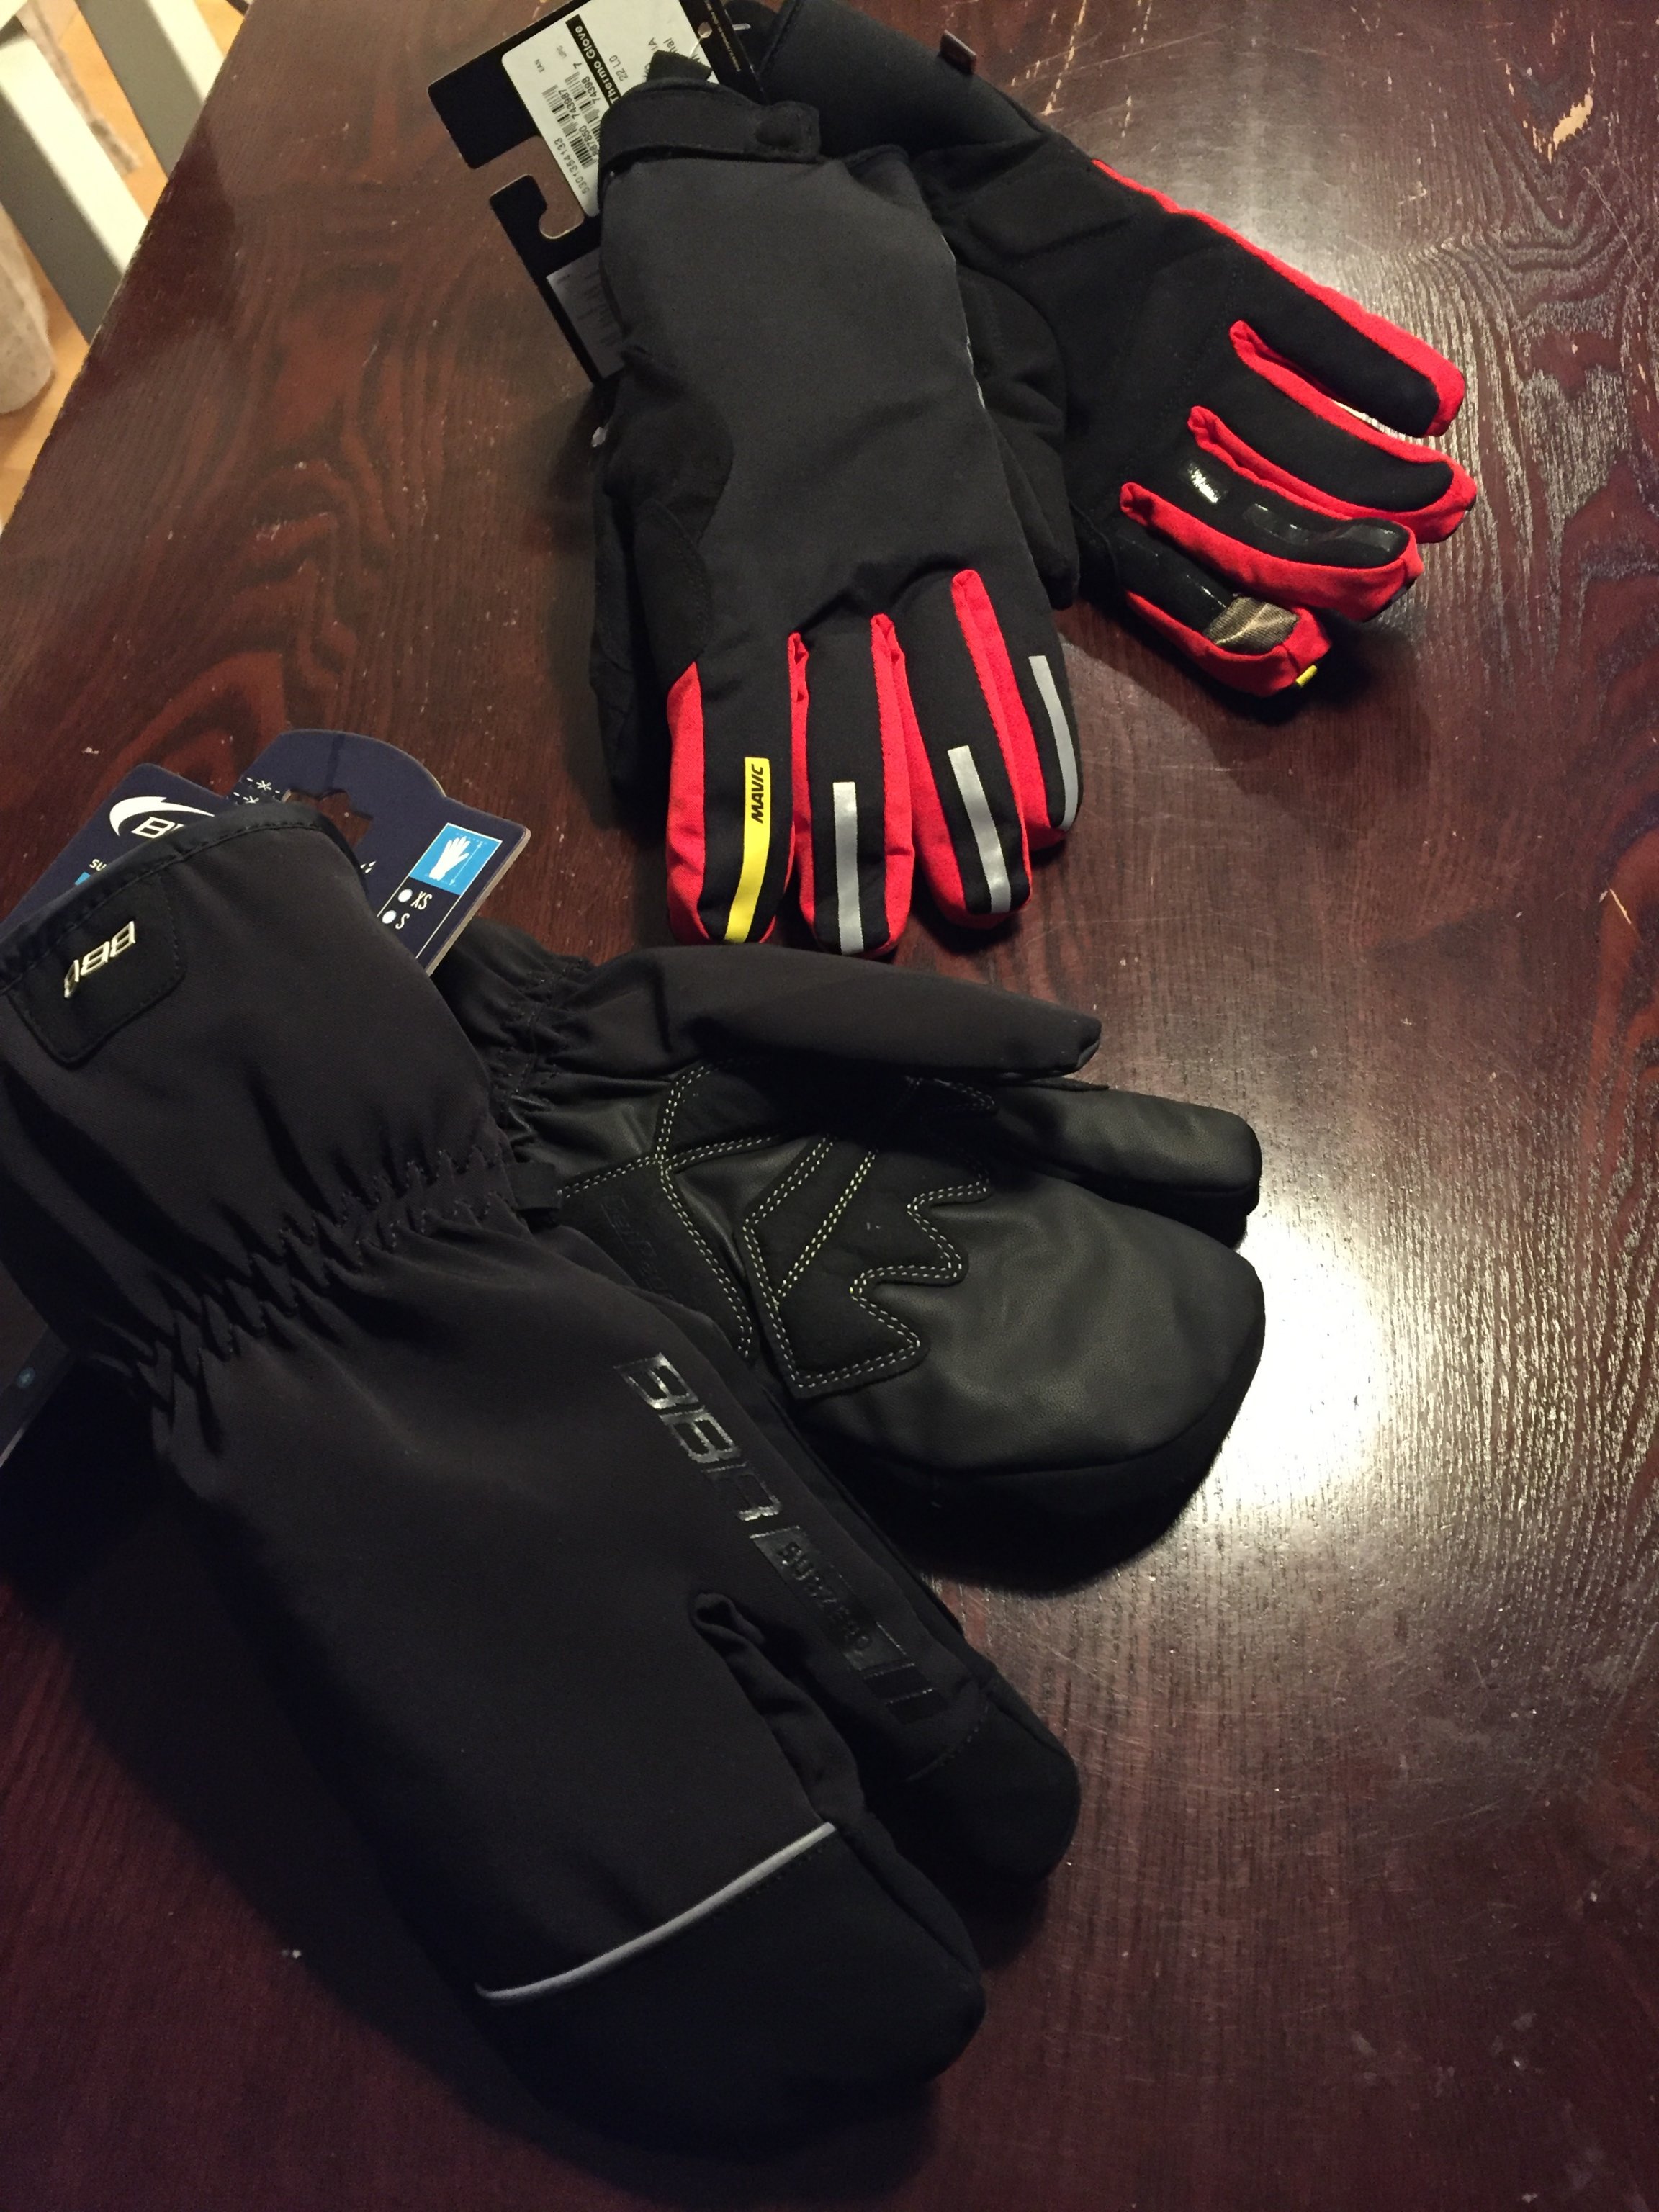 Handschuhe, auch für Minusgrade | MTB-News.de | IBC Mountainbike Forum